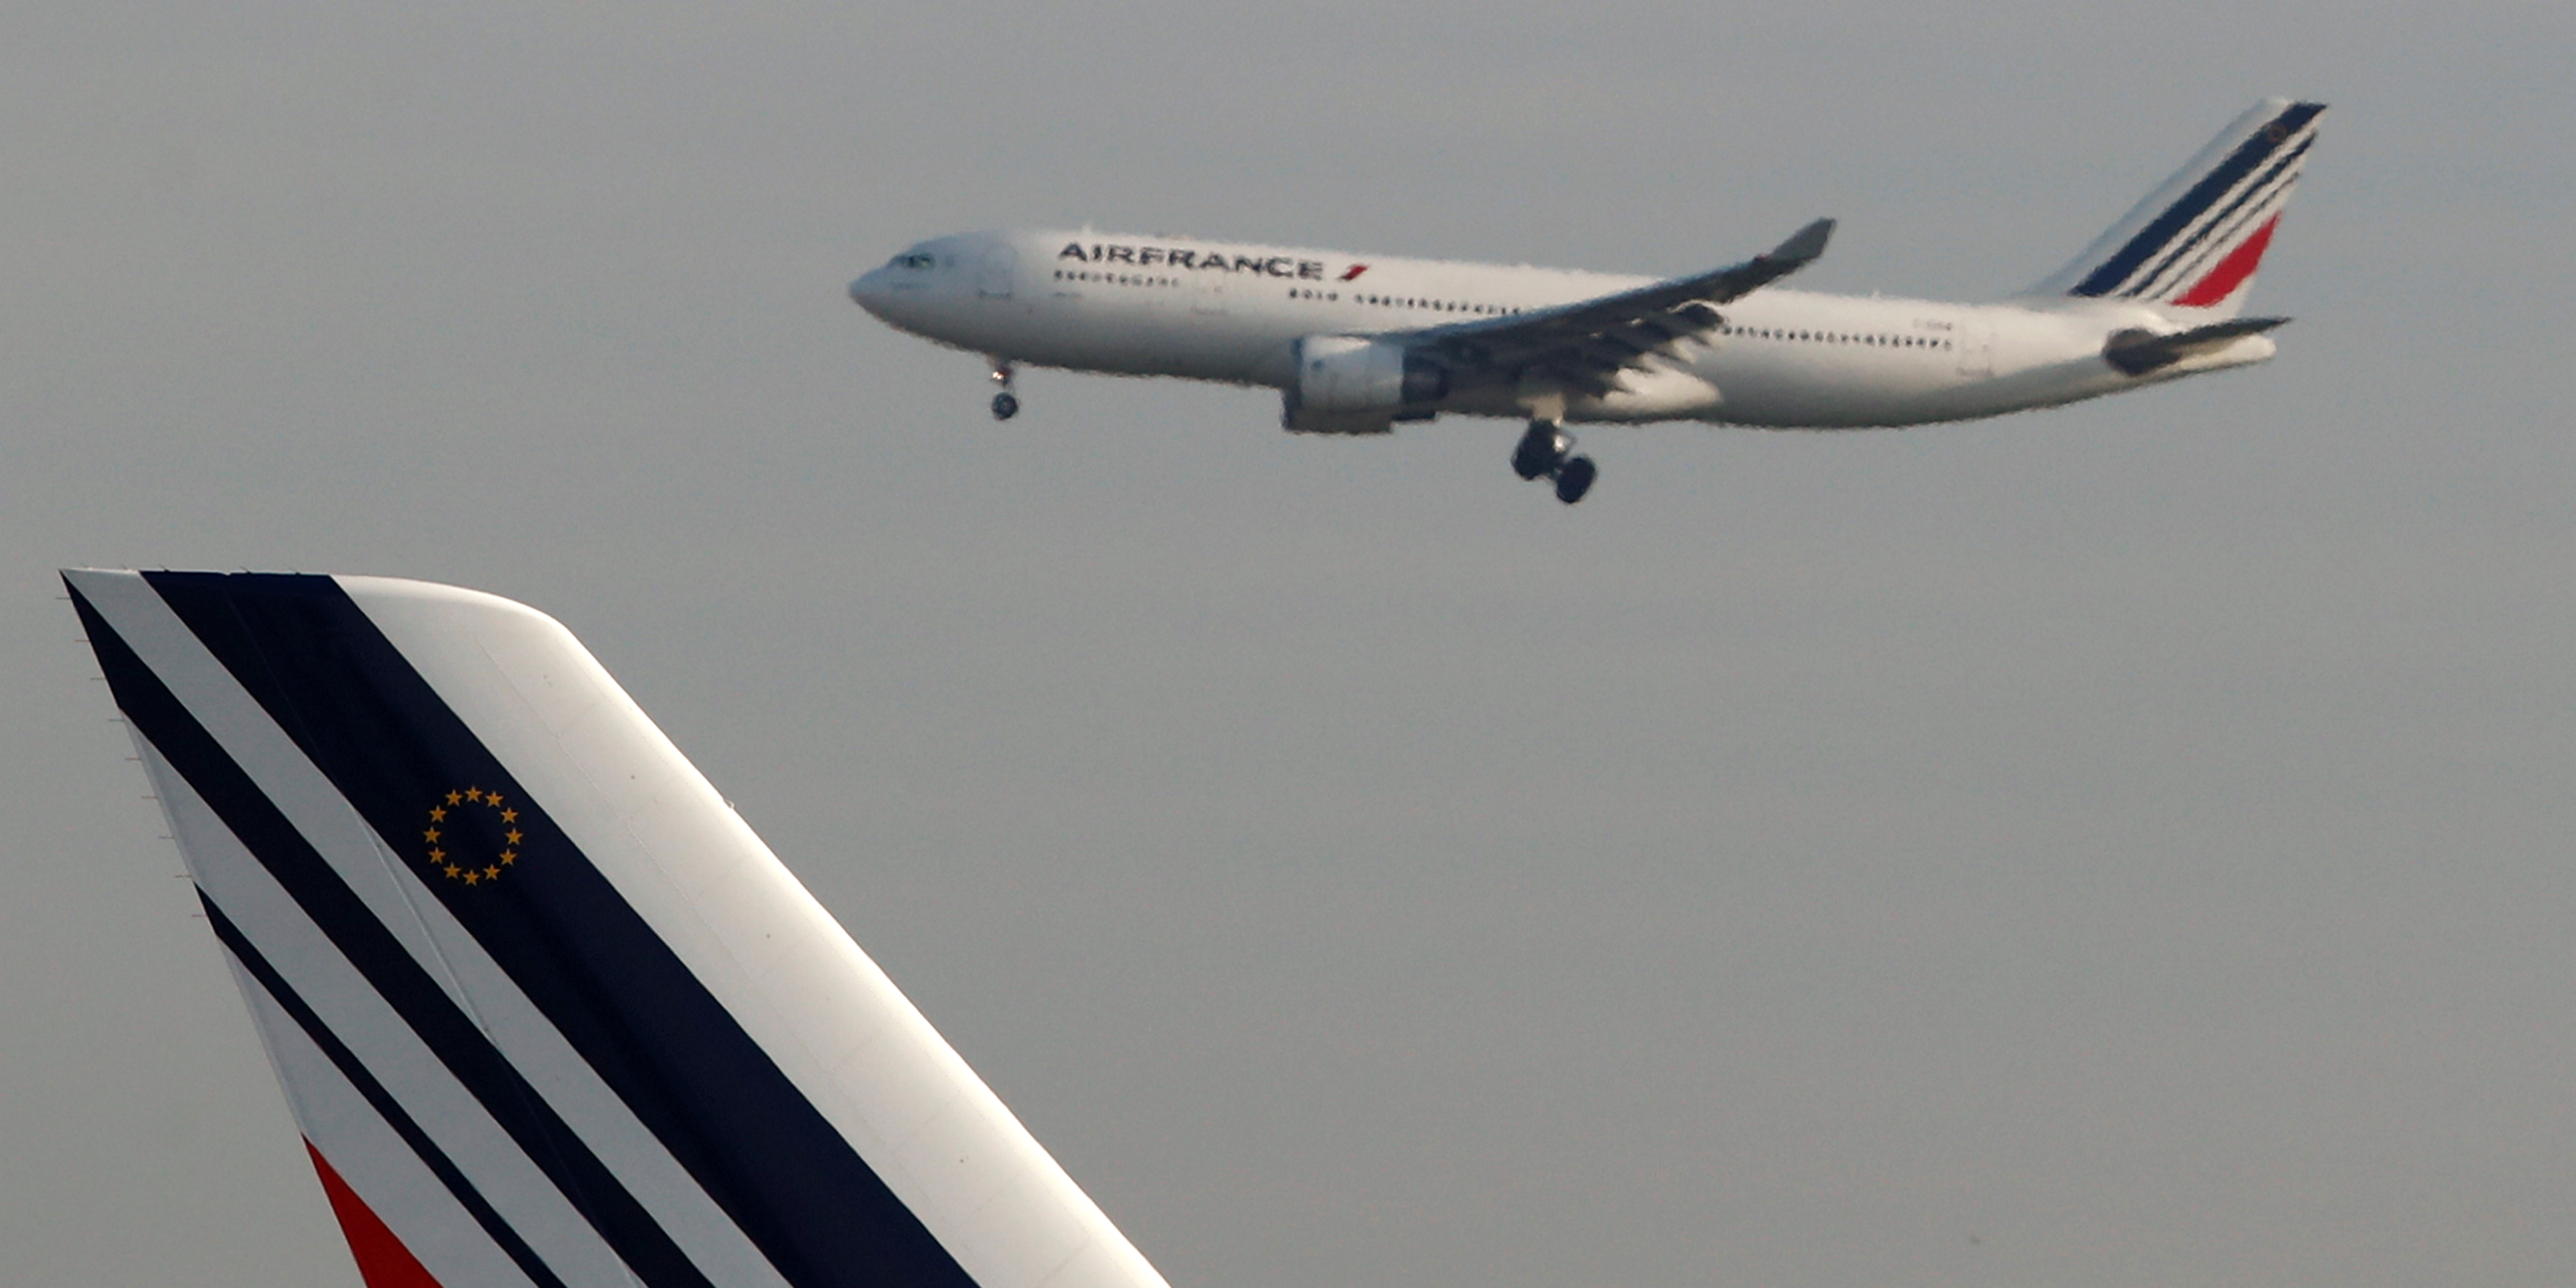 Le plan d'Air France pour compenser 100% de ses émissions de CO2 (pour ses vols intérieurs)